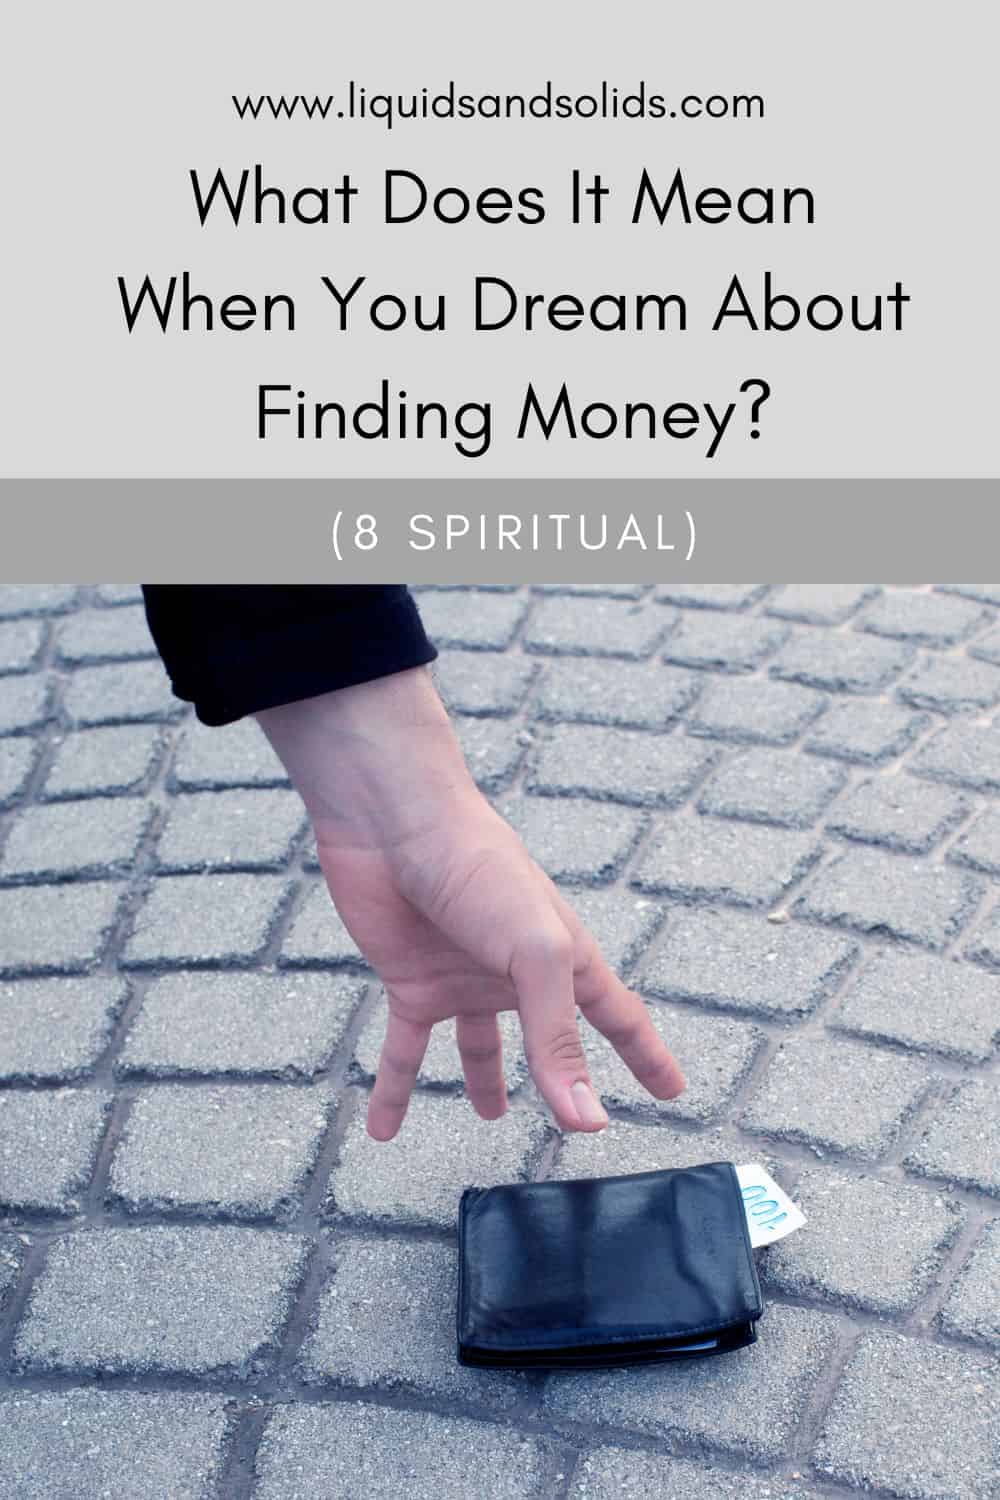  Mit jelent, ha a pénzkeresésről álmodsz? (8 spirituális jelentés)